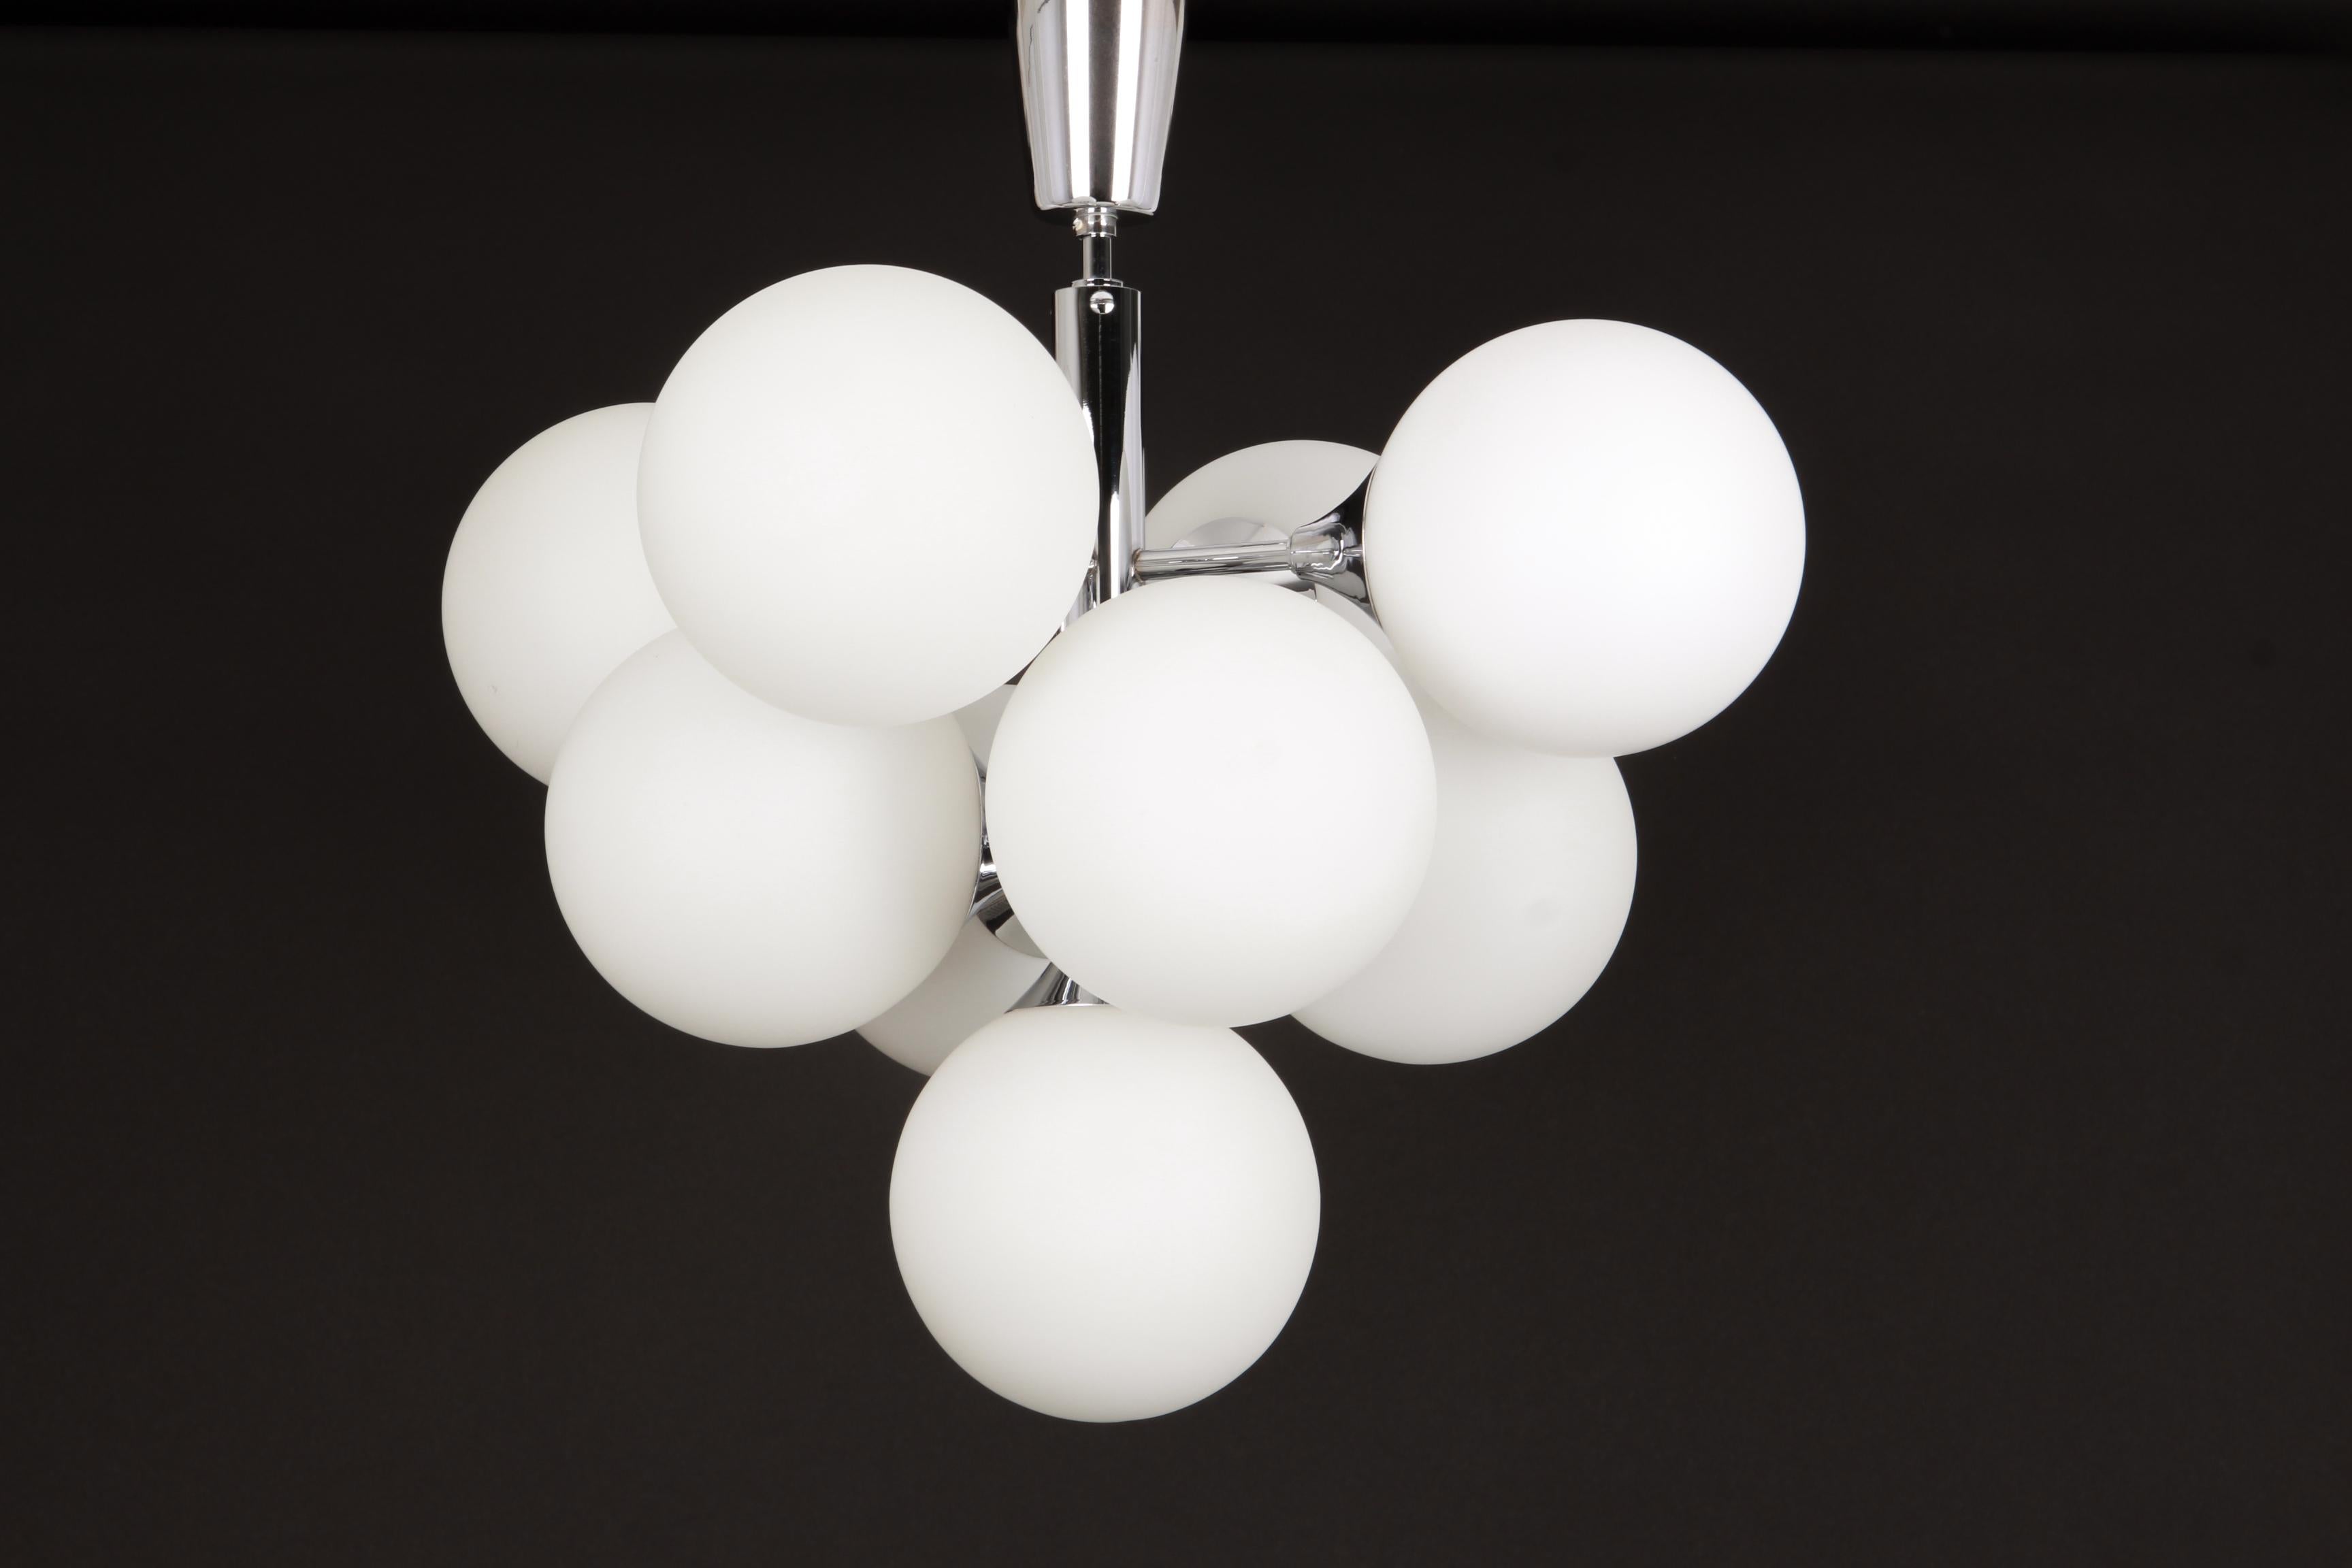 Le lustre chromé atomique avec neuf globes en verre a été conçu par Kaiser Leuchten. Les globes sont soufflés à la main.

De haute qualité et en très bon état. Nettoyé, bien câblé et prêt à l'emploi. 

Le luminaire nécessite 9 ampoules E14